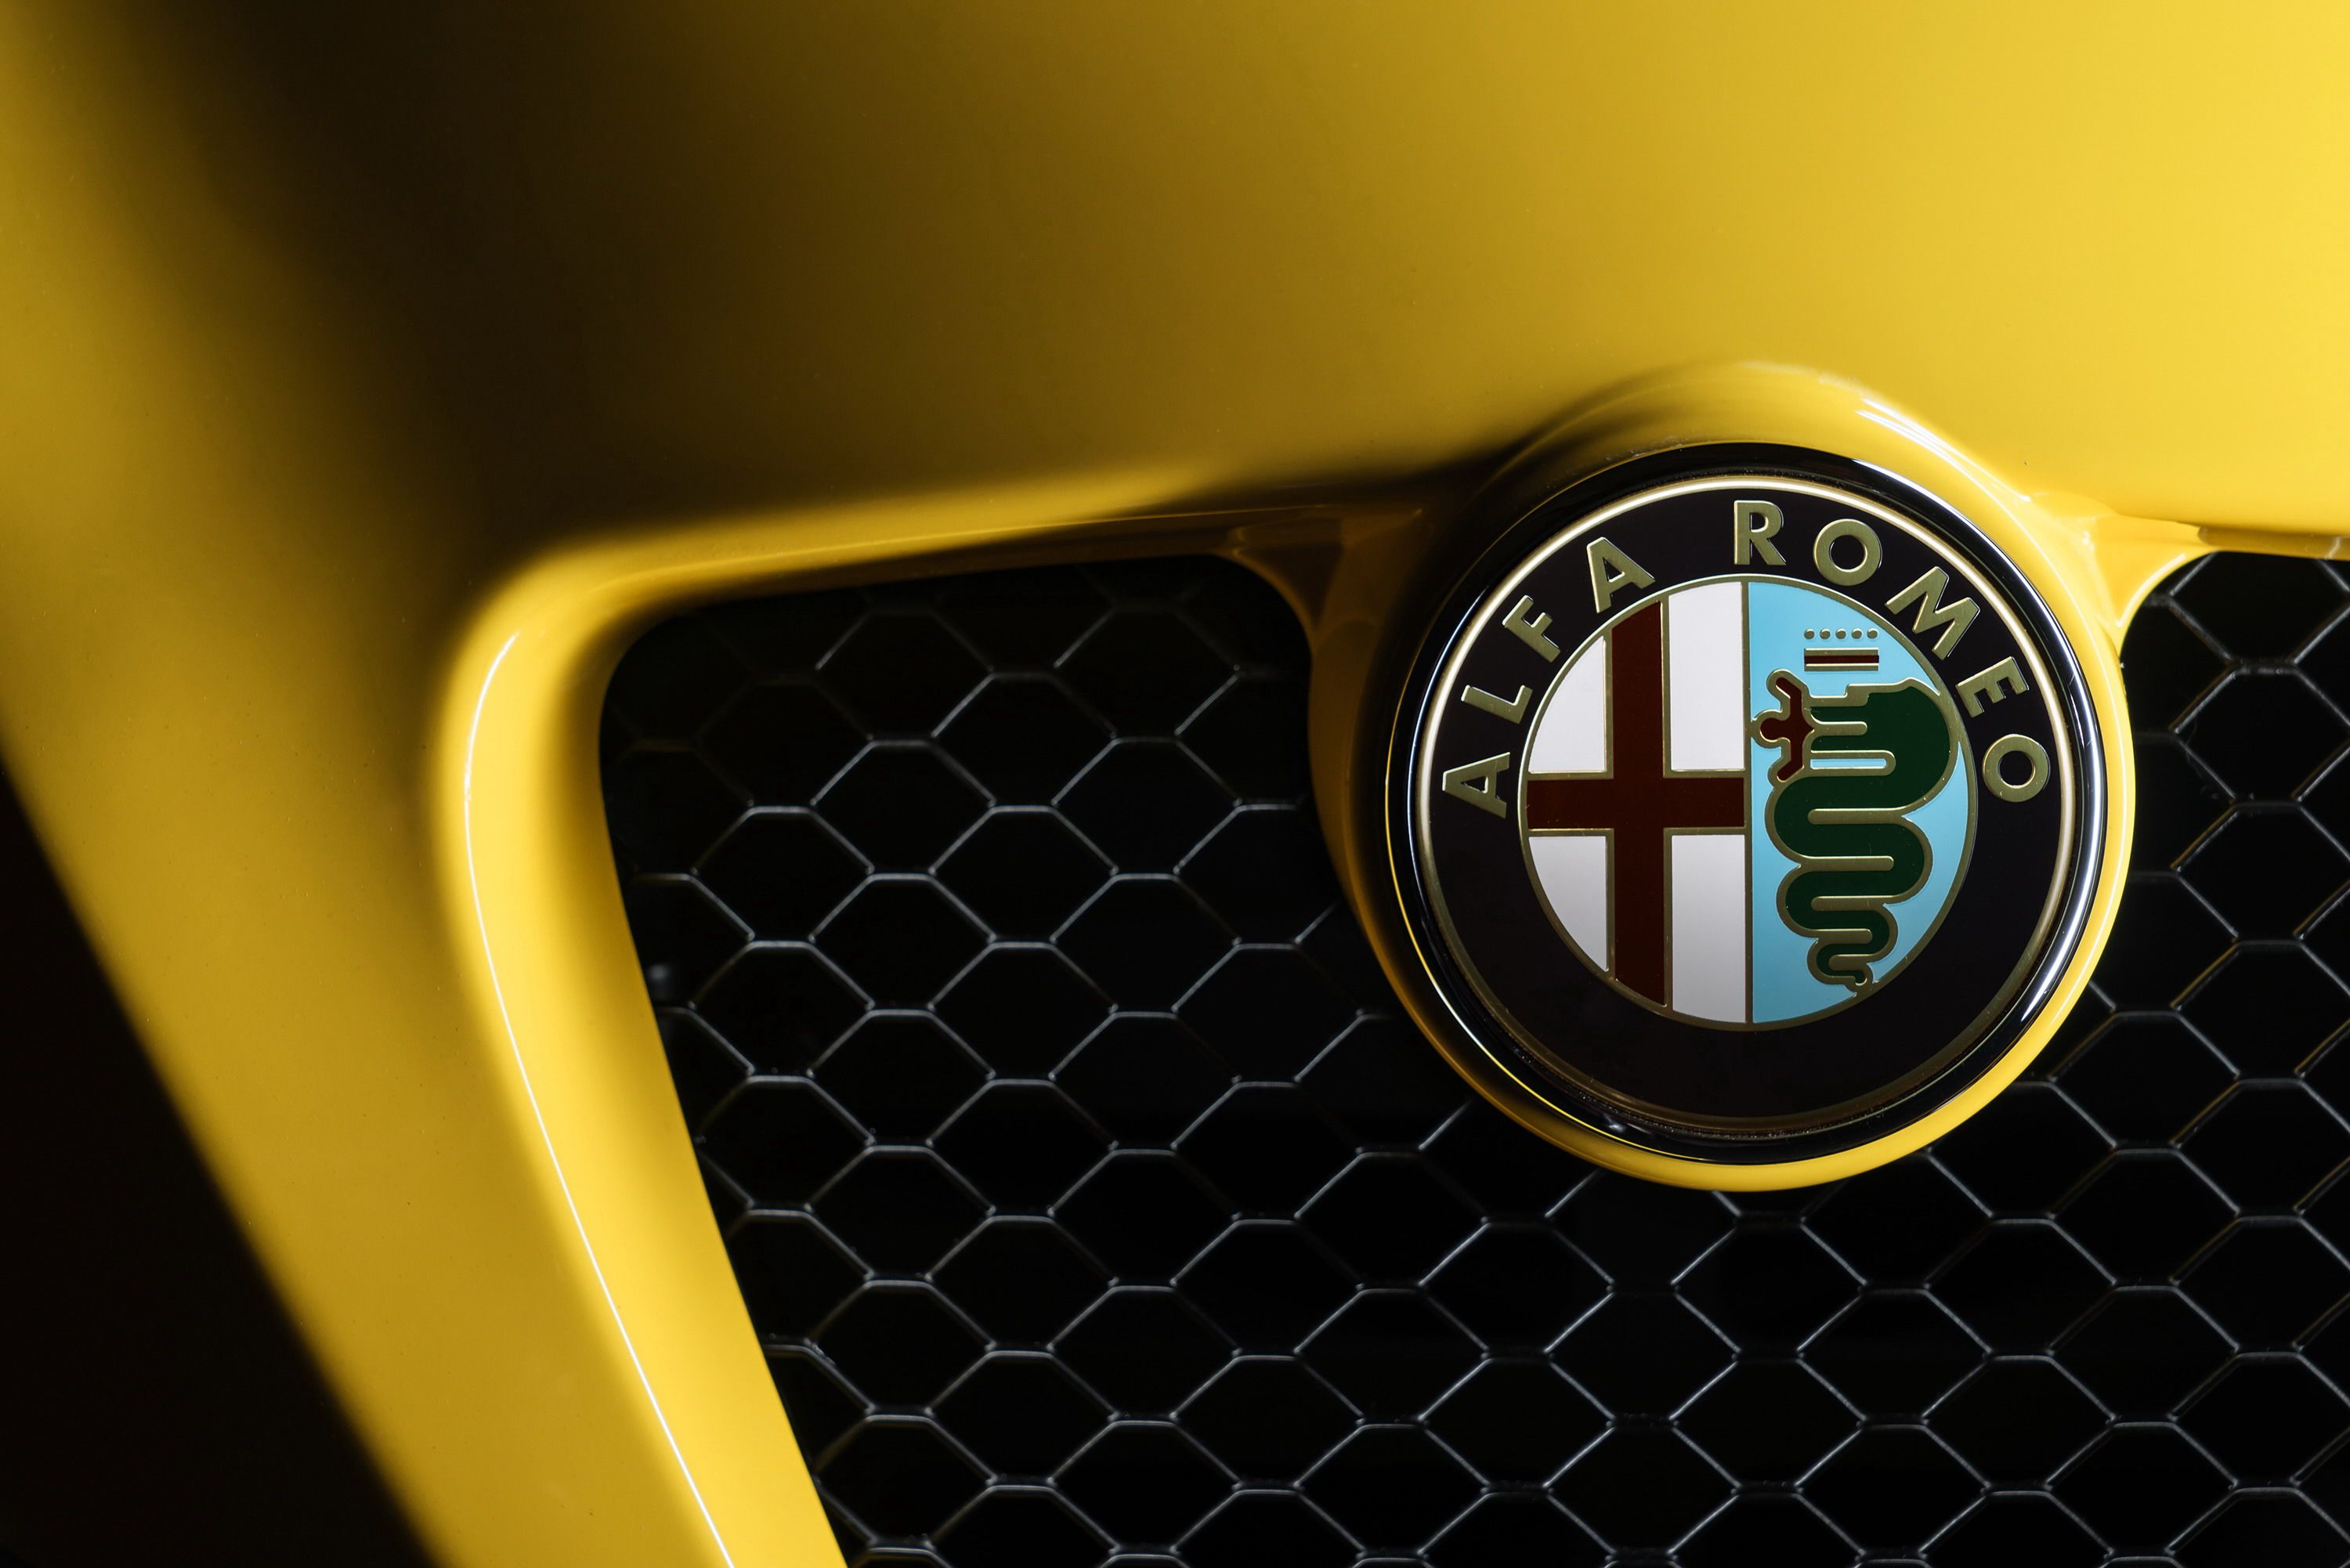 2016 Alfa Romeo 4C Spider